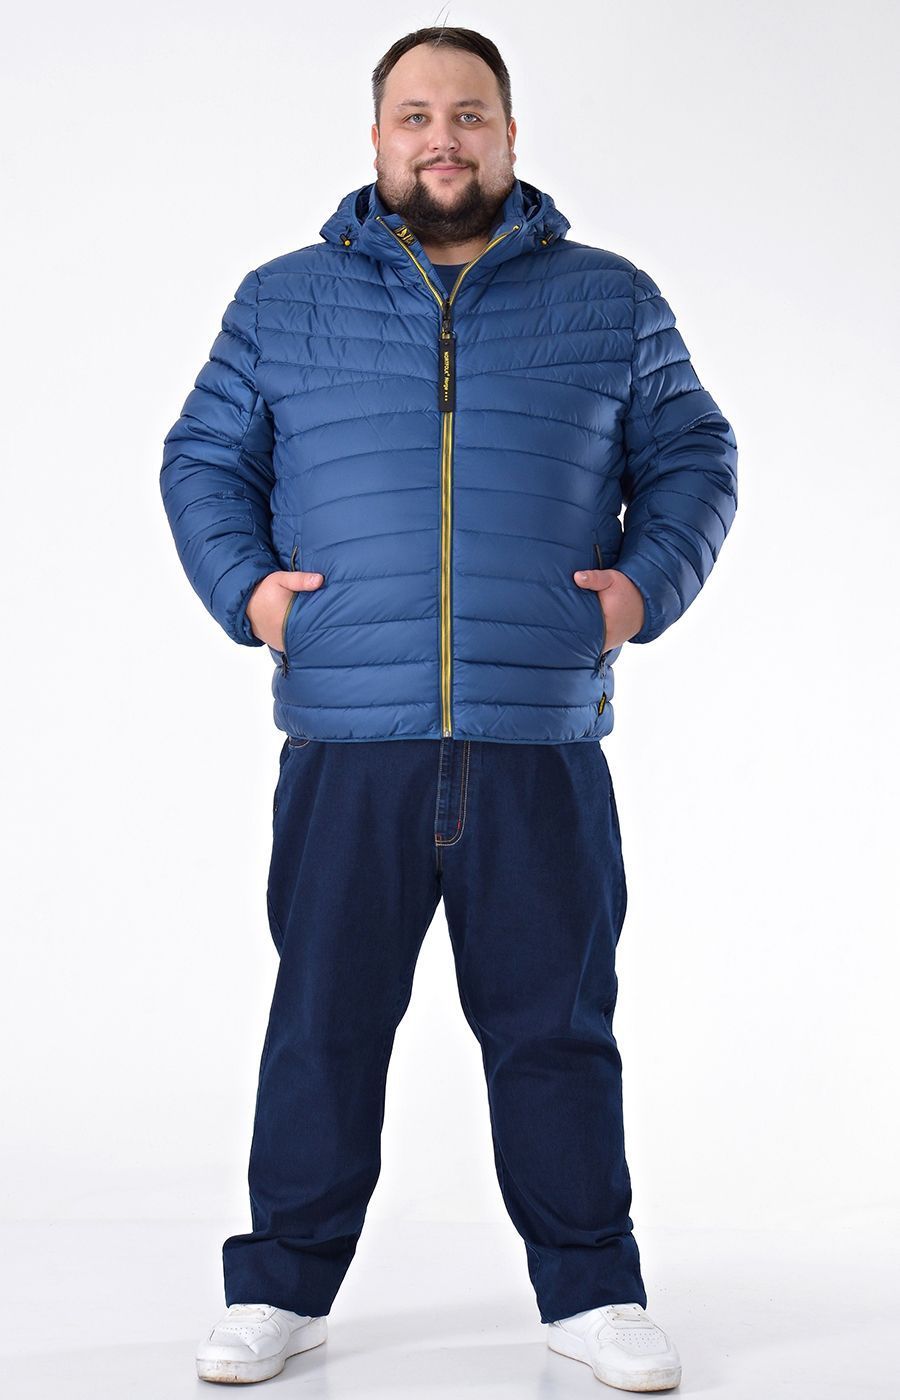 Зимняя куртка синего цвета стёганая большого размера